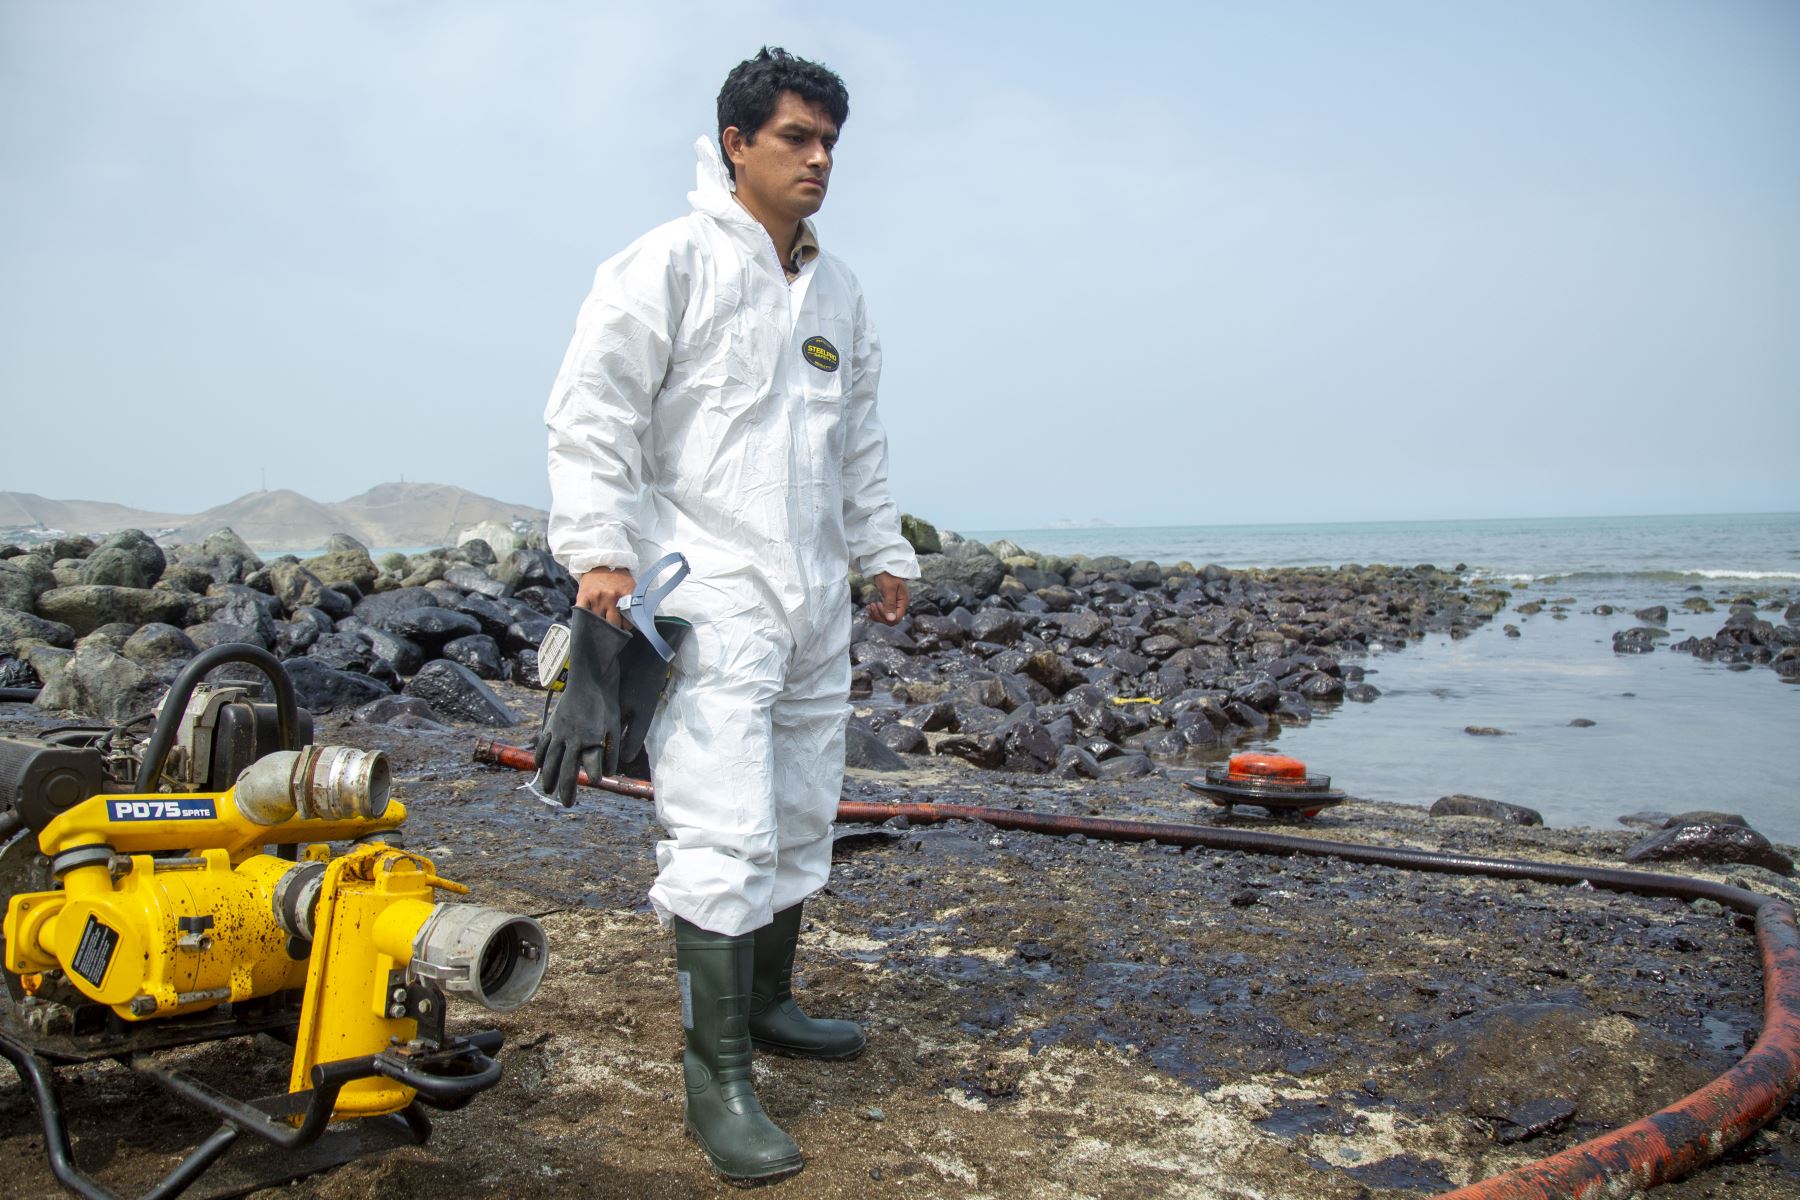 Carlos Segovia Aranda es ingeniero en Turismo. Tiene 30 años y en estos momentos monitorea el comportamiento de las aves, hacia dónde van las que han sobrevivido, cuántas han muerto; y se turna con sus compañeros para sacar el petróleo del mar. ANDINA/Sernanp